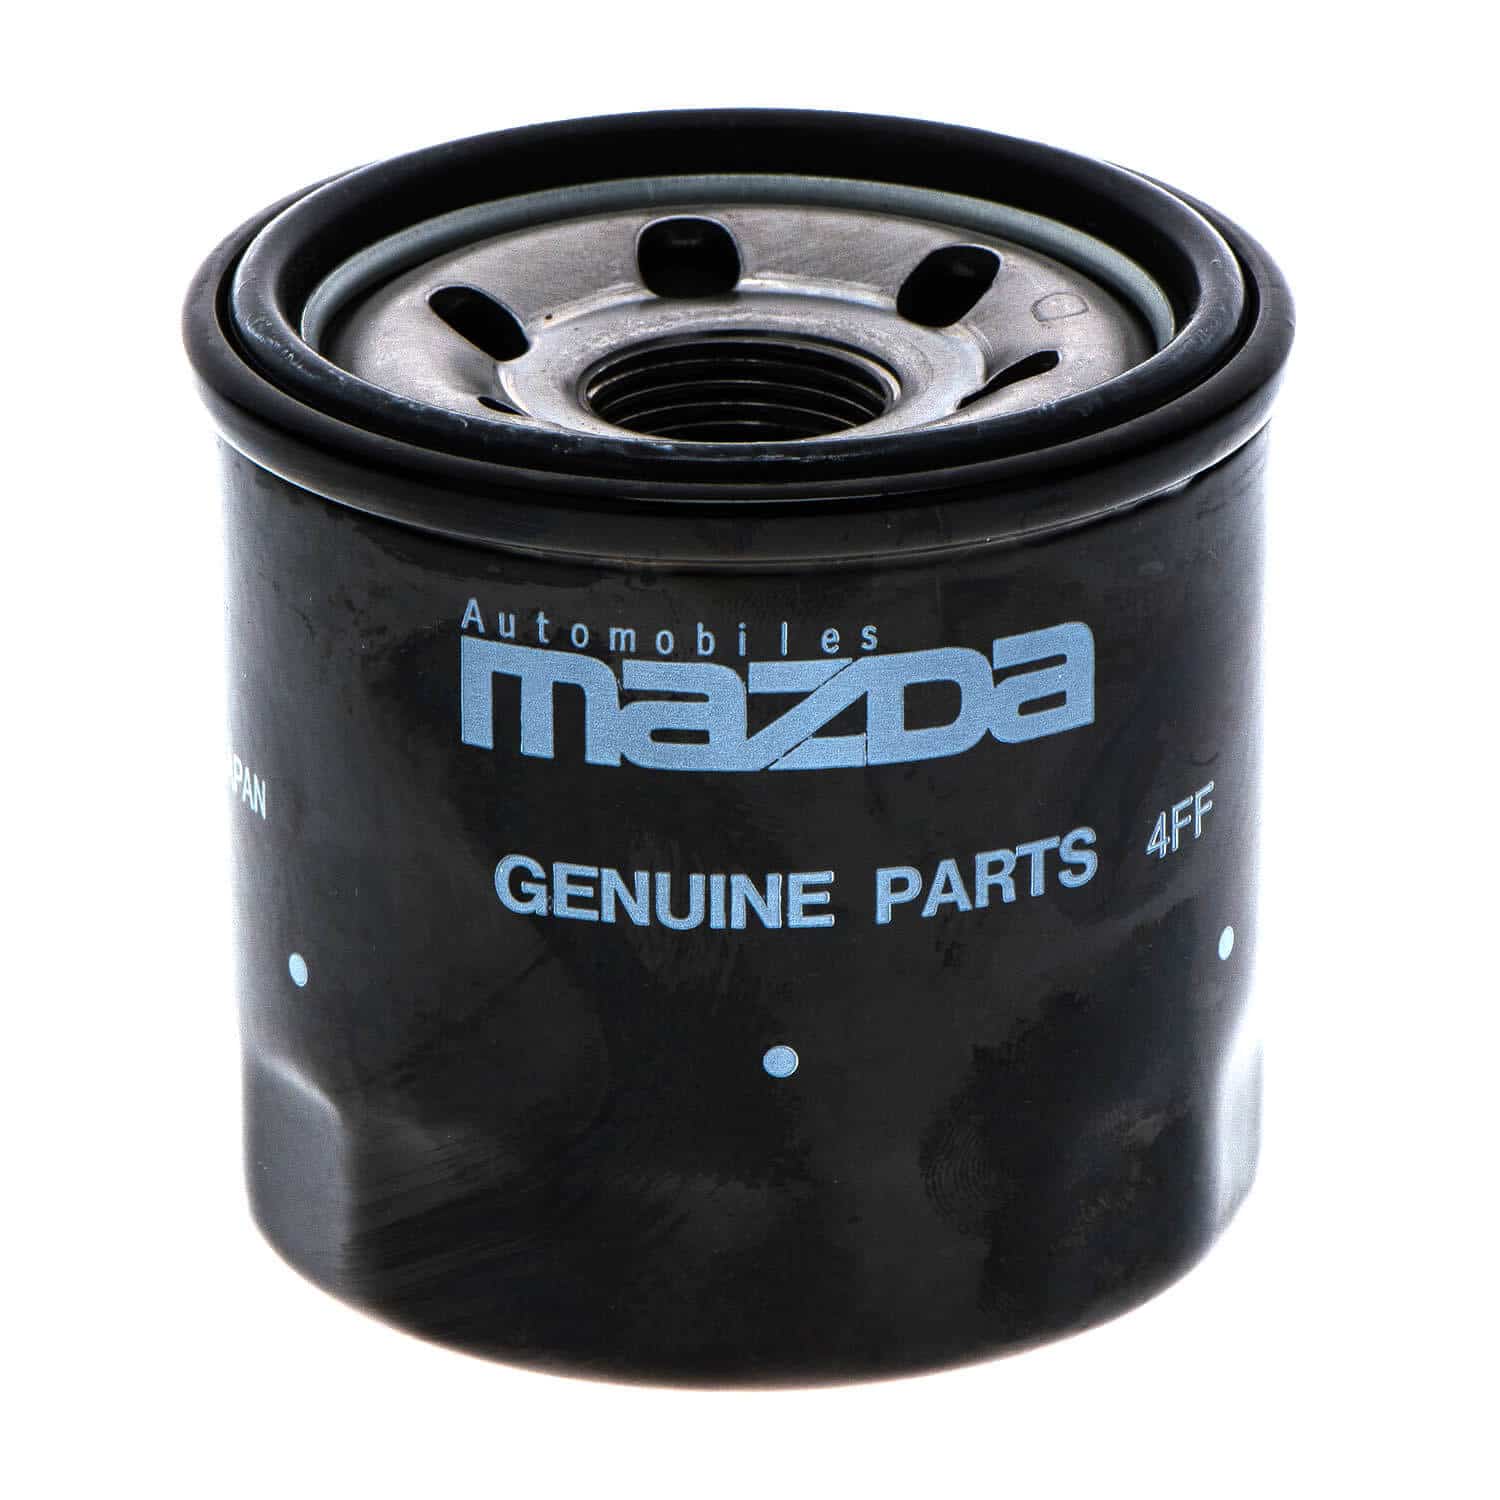 Genuine Oil Filter for Mazda MX-5 NC